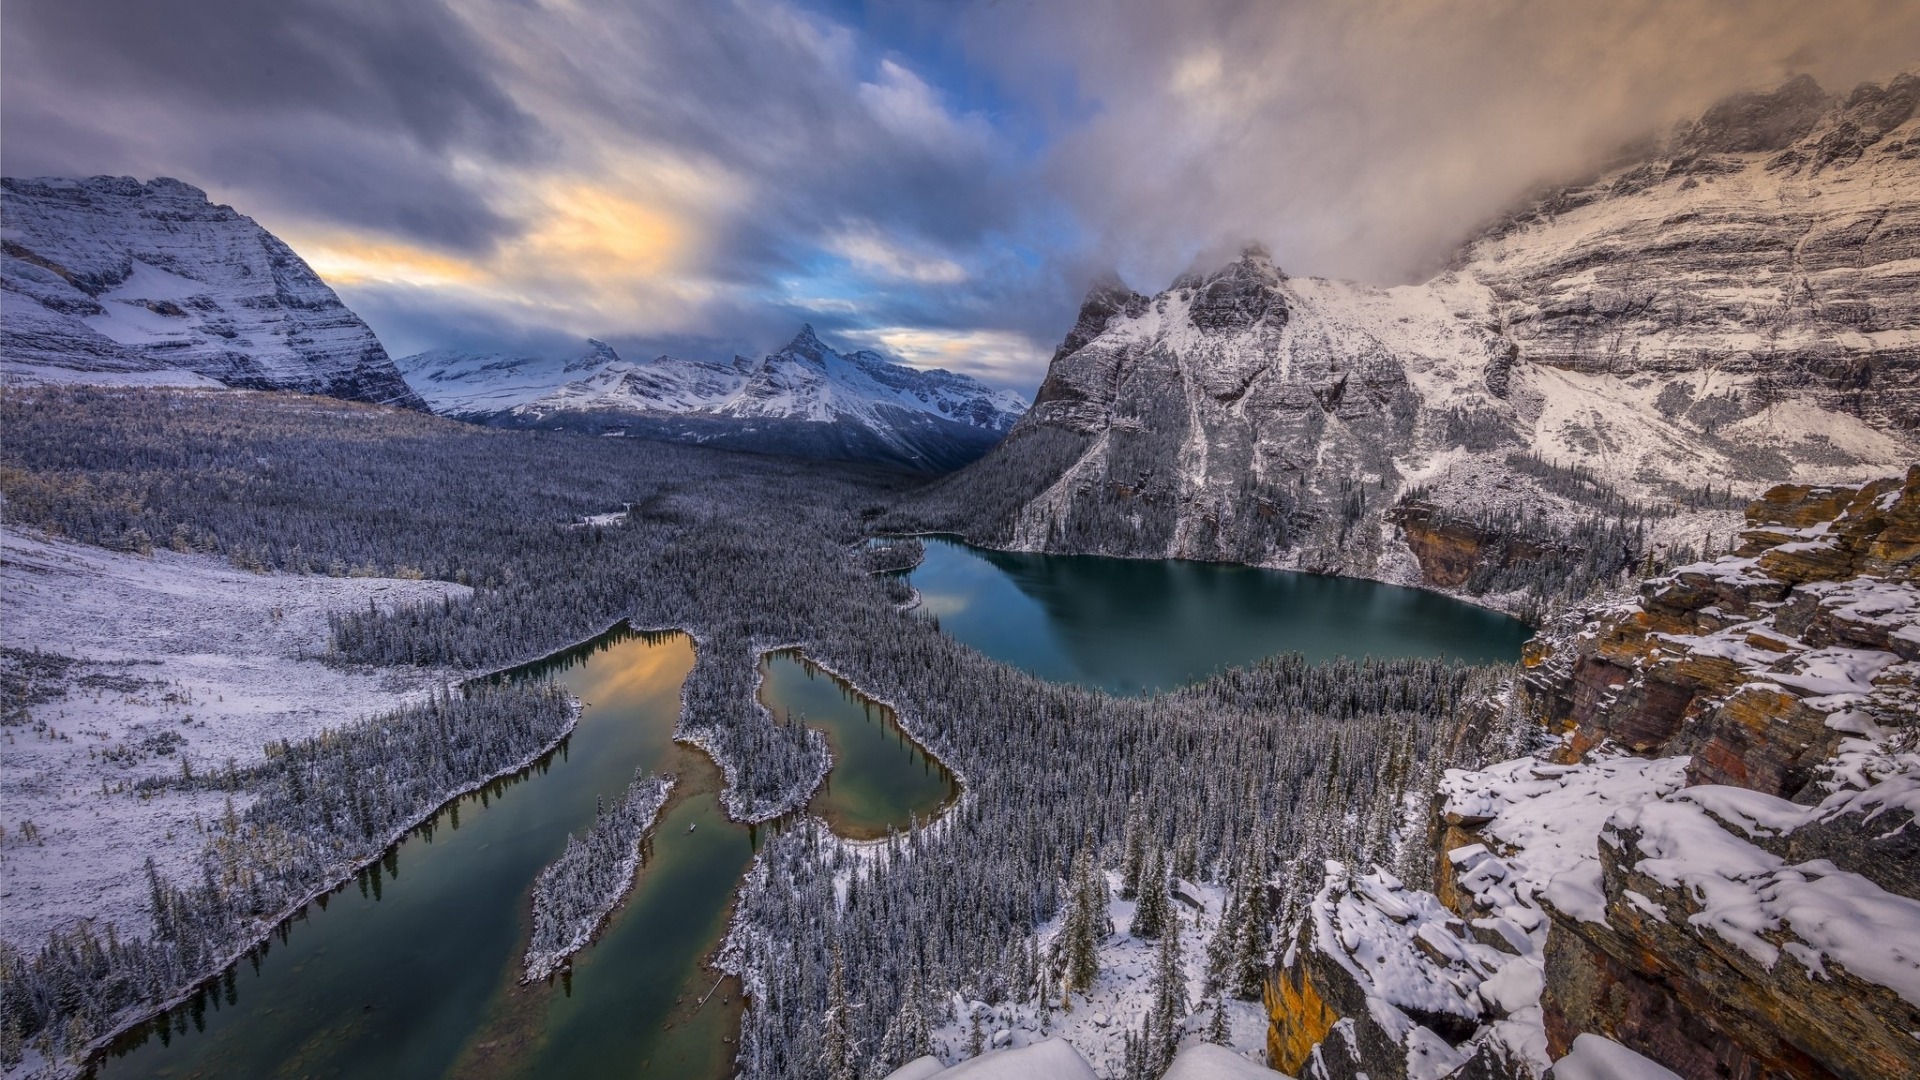 عکس زیبا و نایاب از منظره زمستانه و زمین سپید پوش 